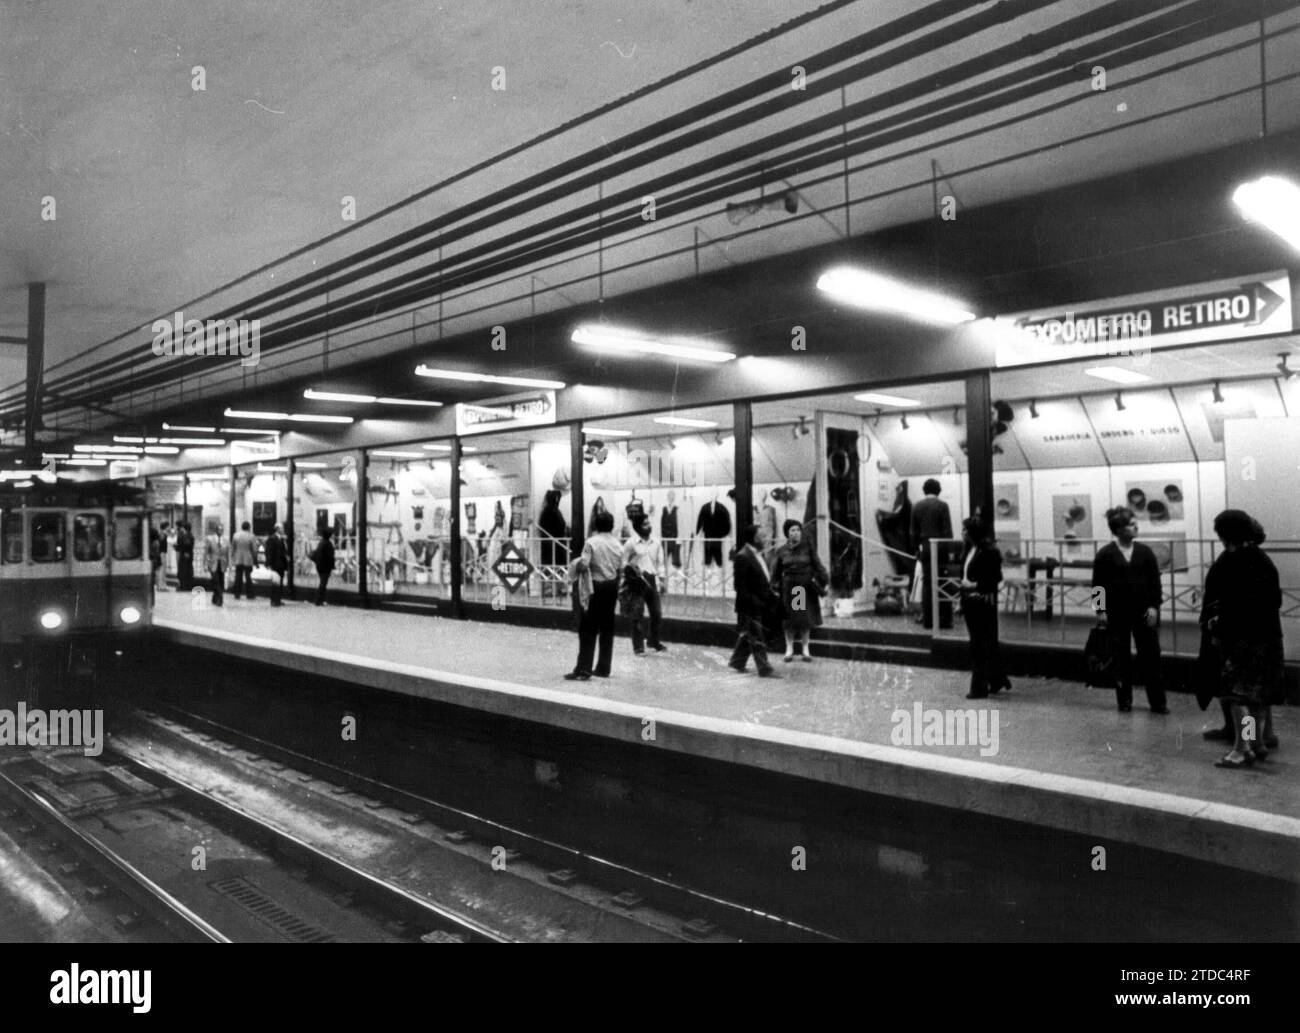 Madrid, 17/05/1982. Mostra nella metropolitana alla stazione di Retiro. Crediti: Album / Archivo ABC / Luis Alonso Foto Stock